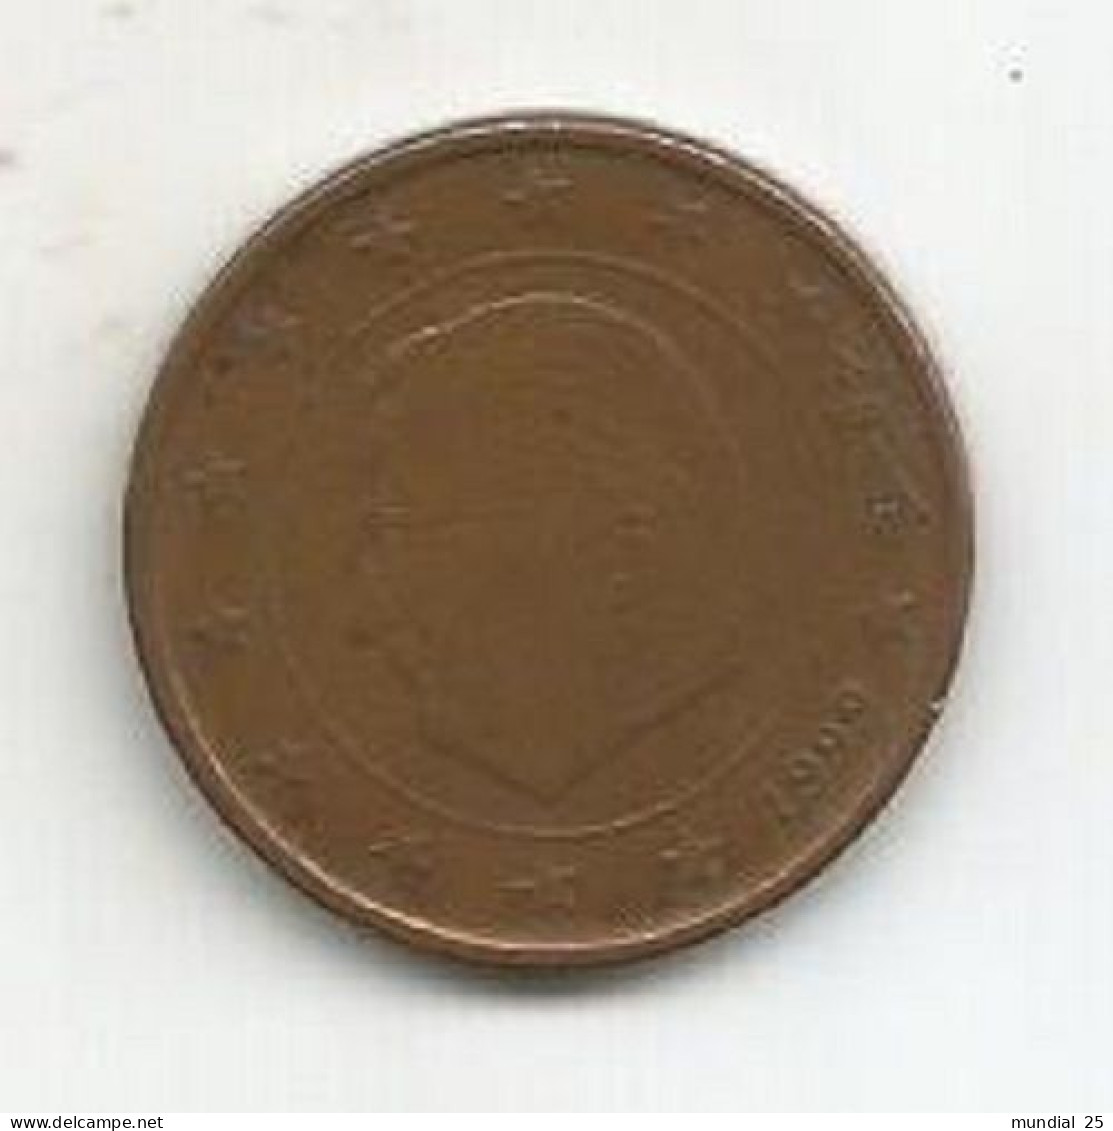 BELGIUM 5 EURO CENT 1999 - Belgium